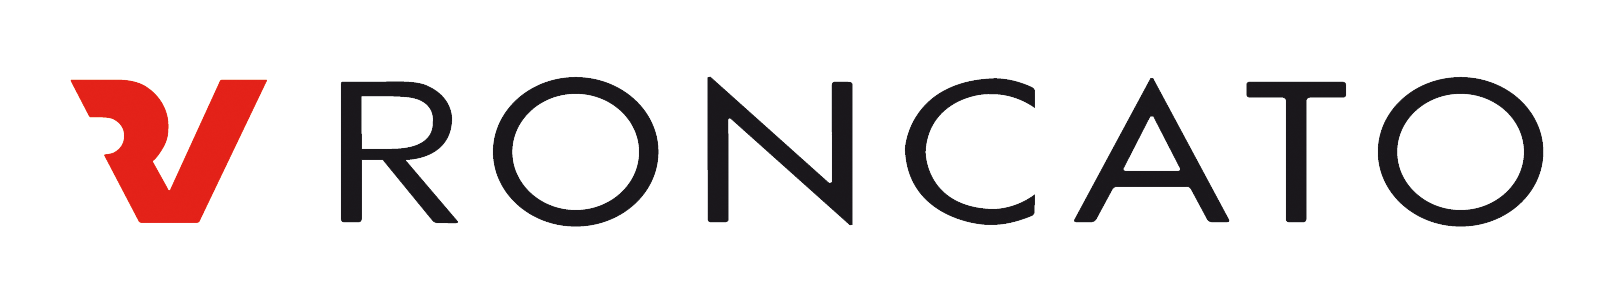 Roncato_Logo